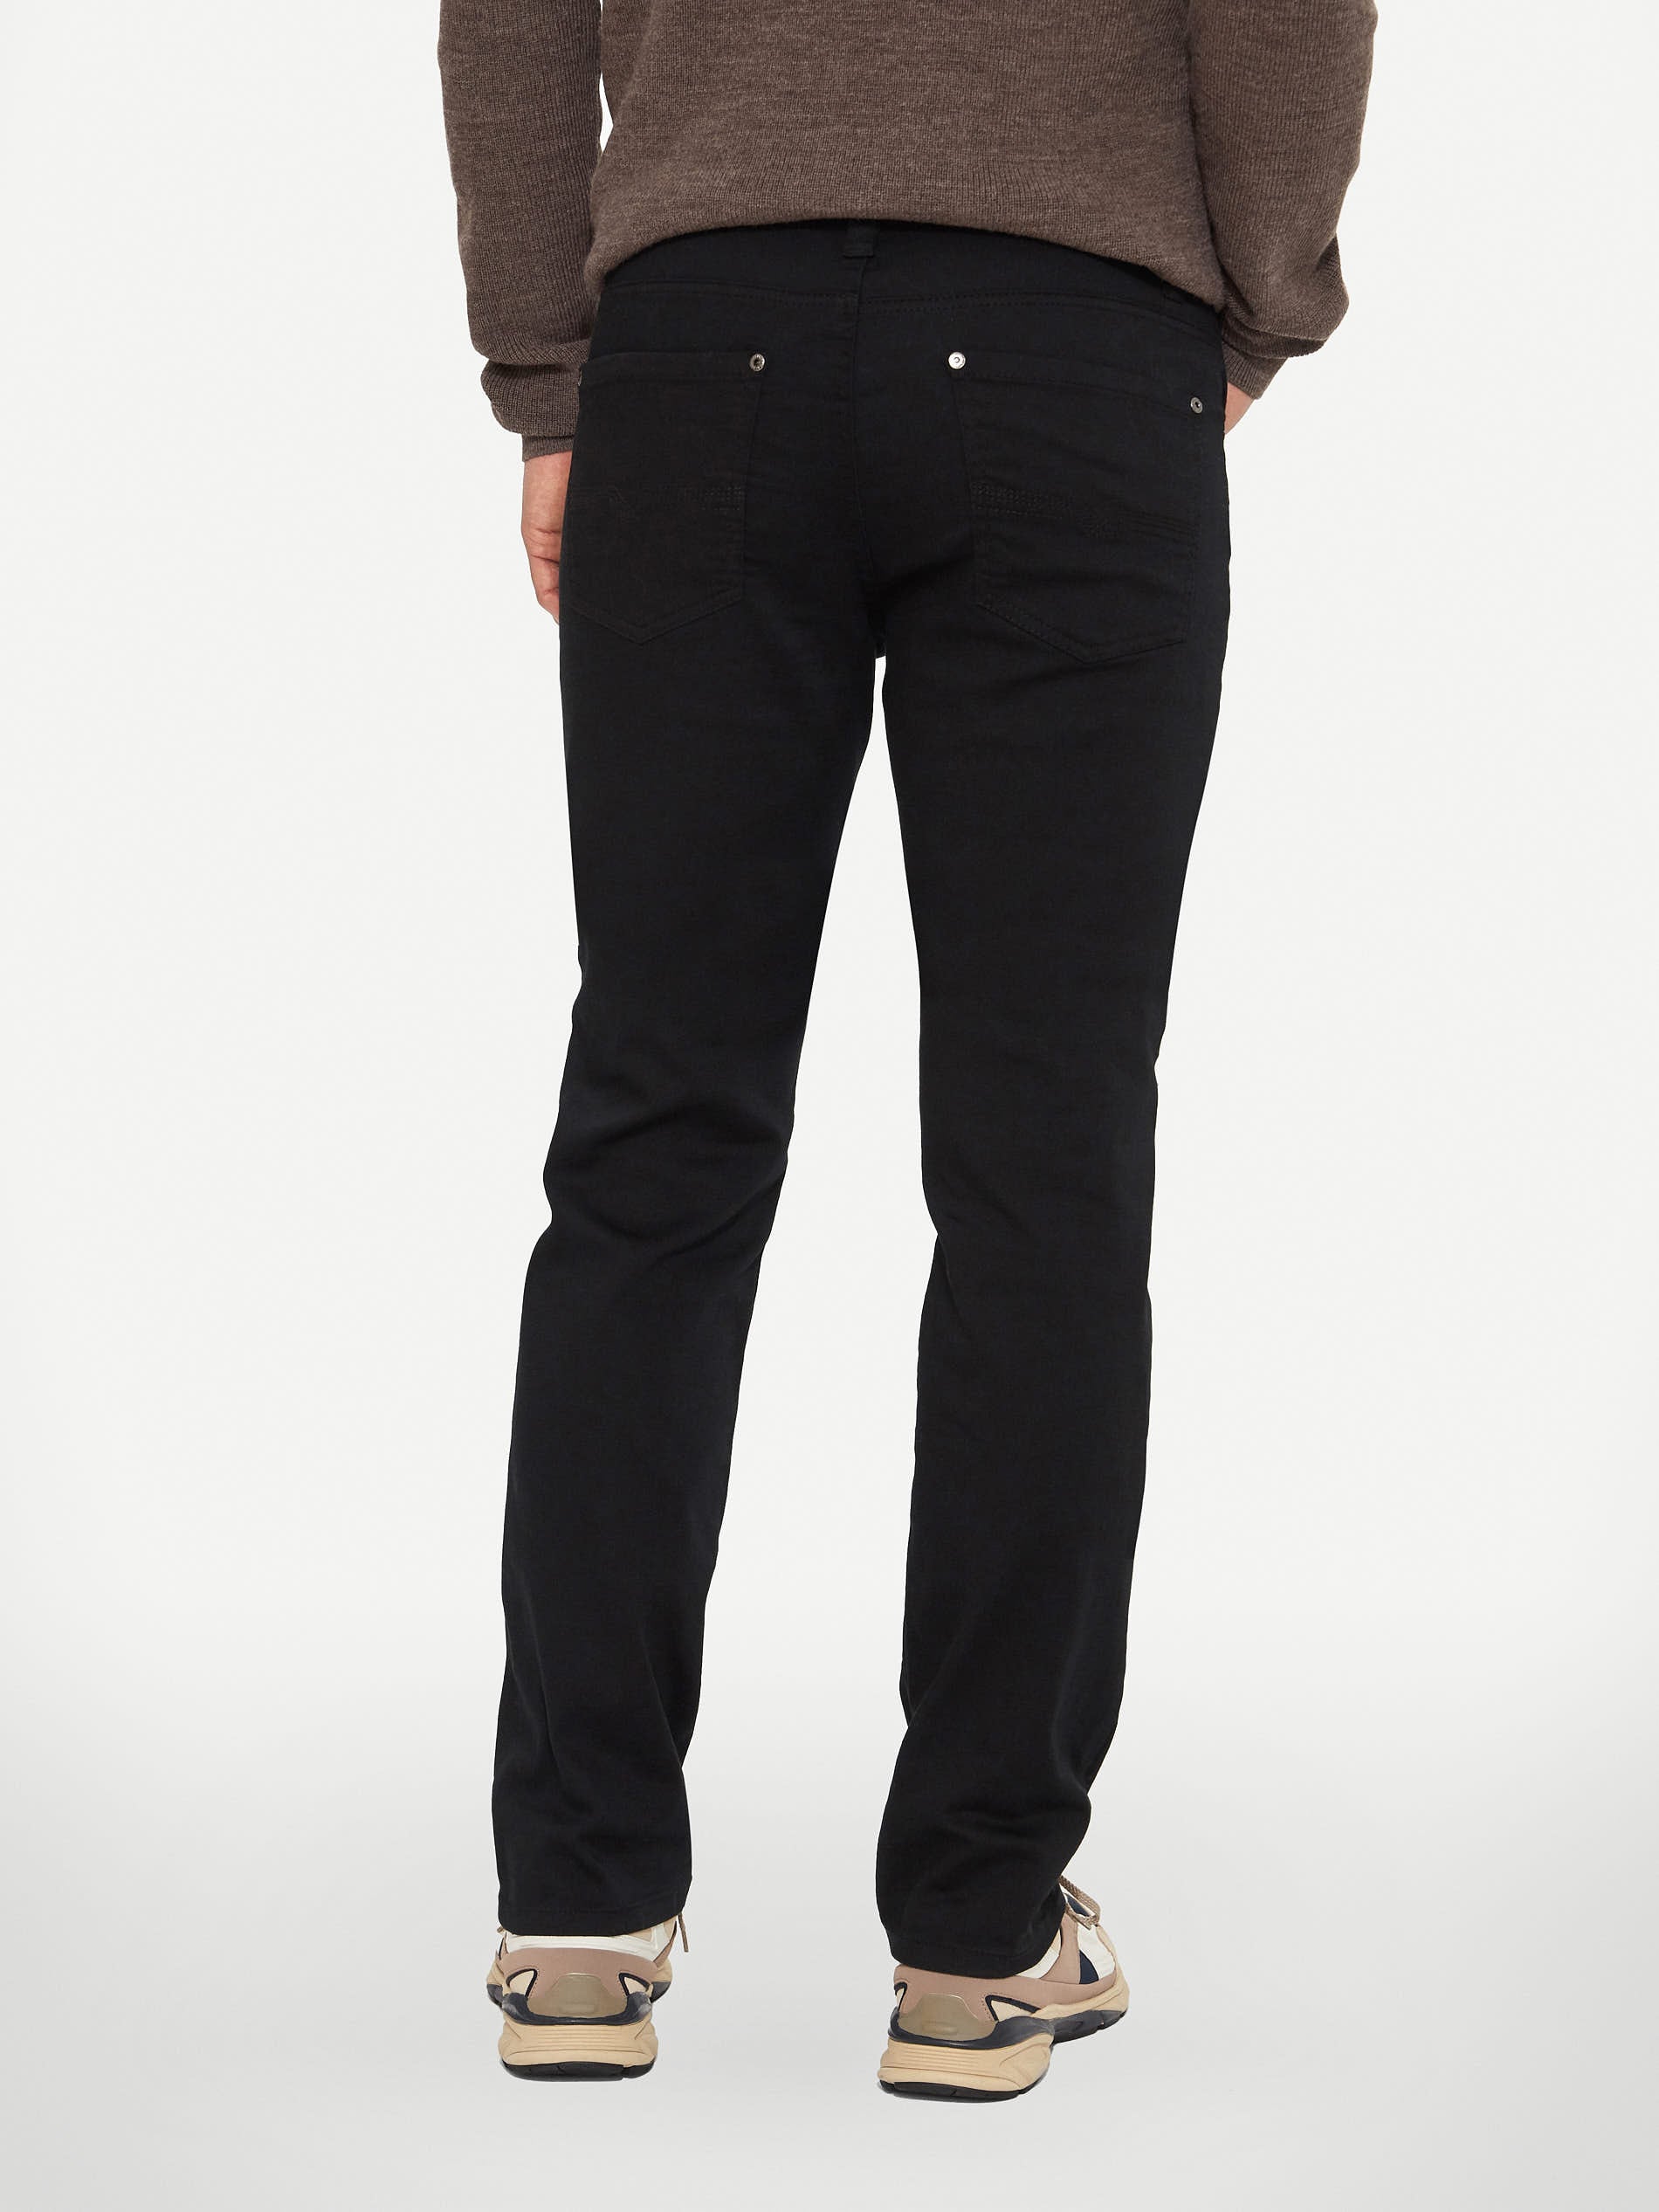 Pantalon extensible à 5 poches noir - LOIS